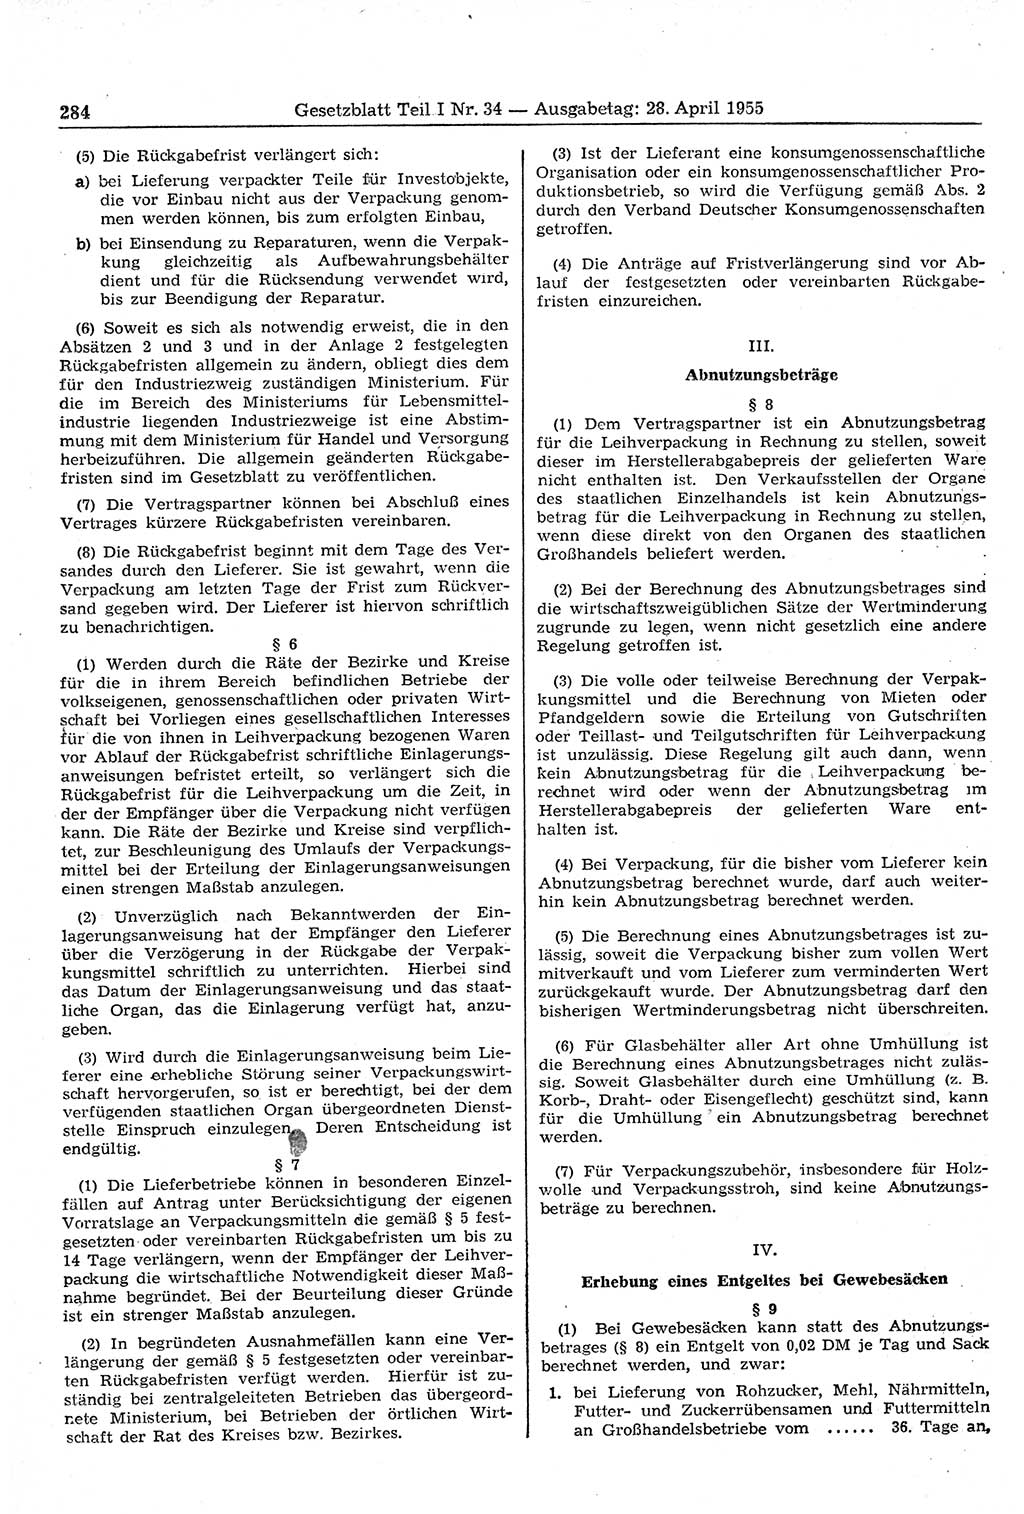 Gesetzblatt (GBl.) der Deutschen Demokratischen Republik (DDR) Teil Ⅰ 1955, Seite 284 (GBl. DDR Ⅰ 1955, S. 284)